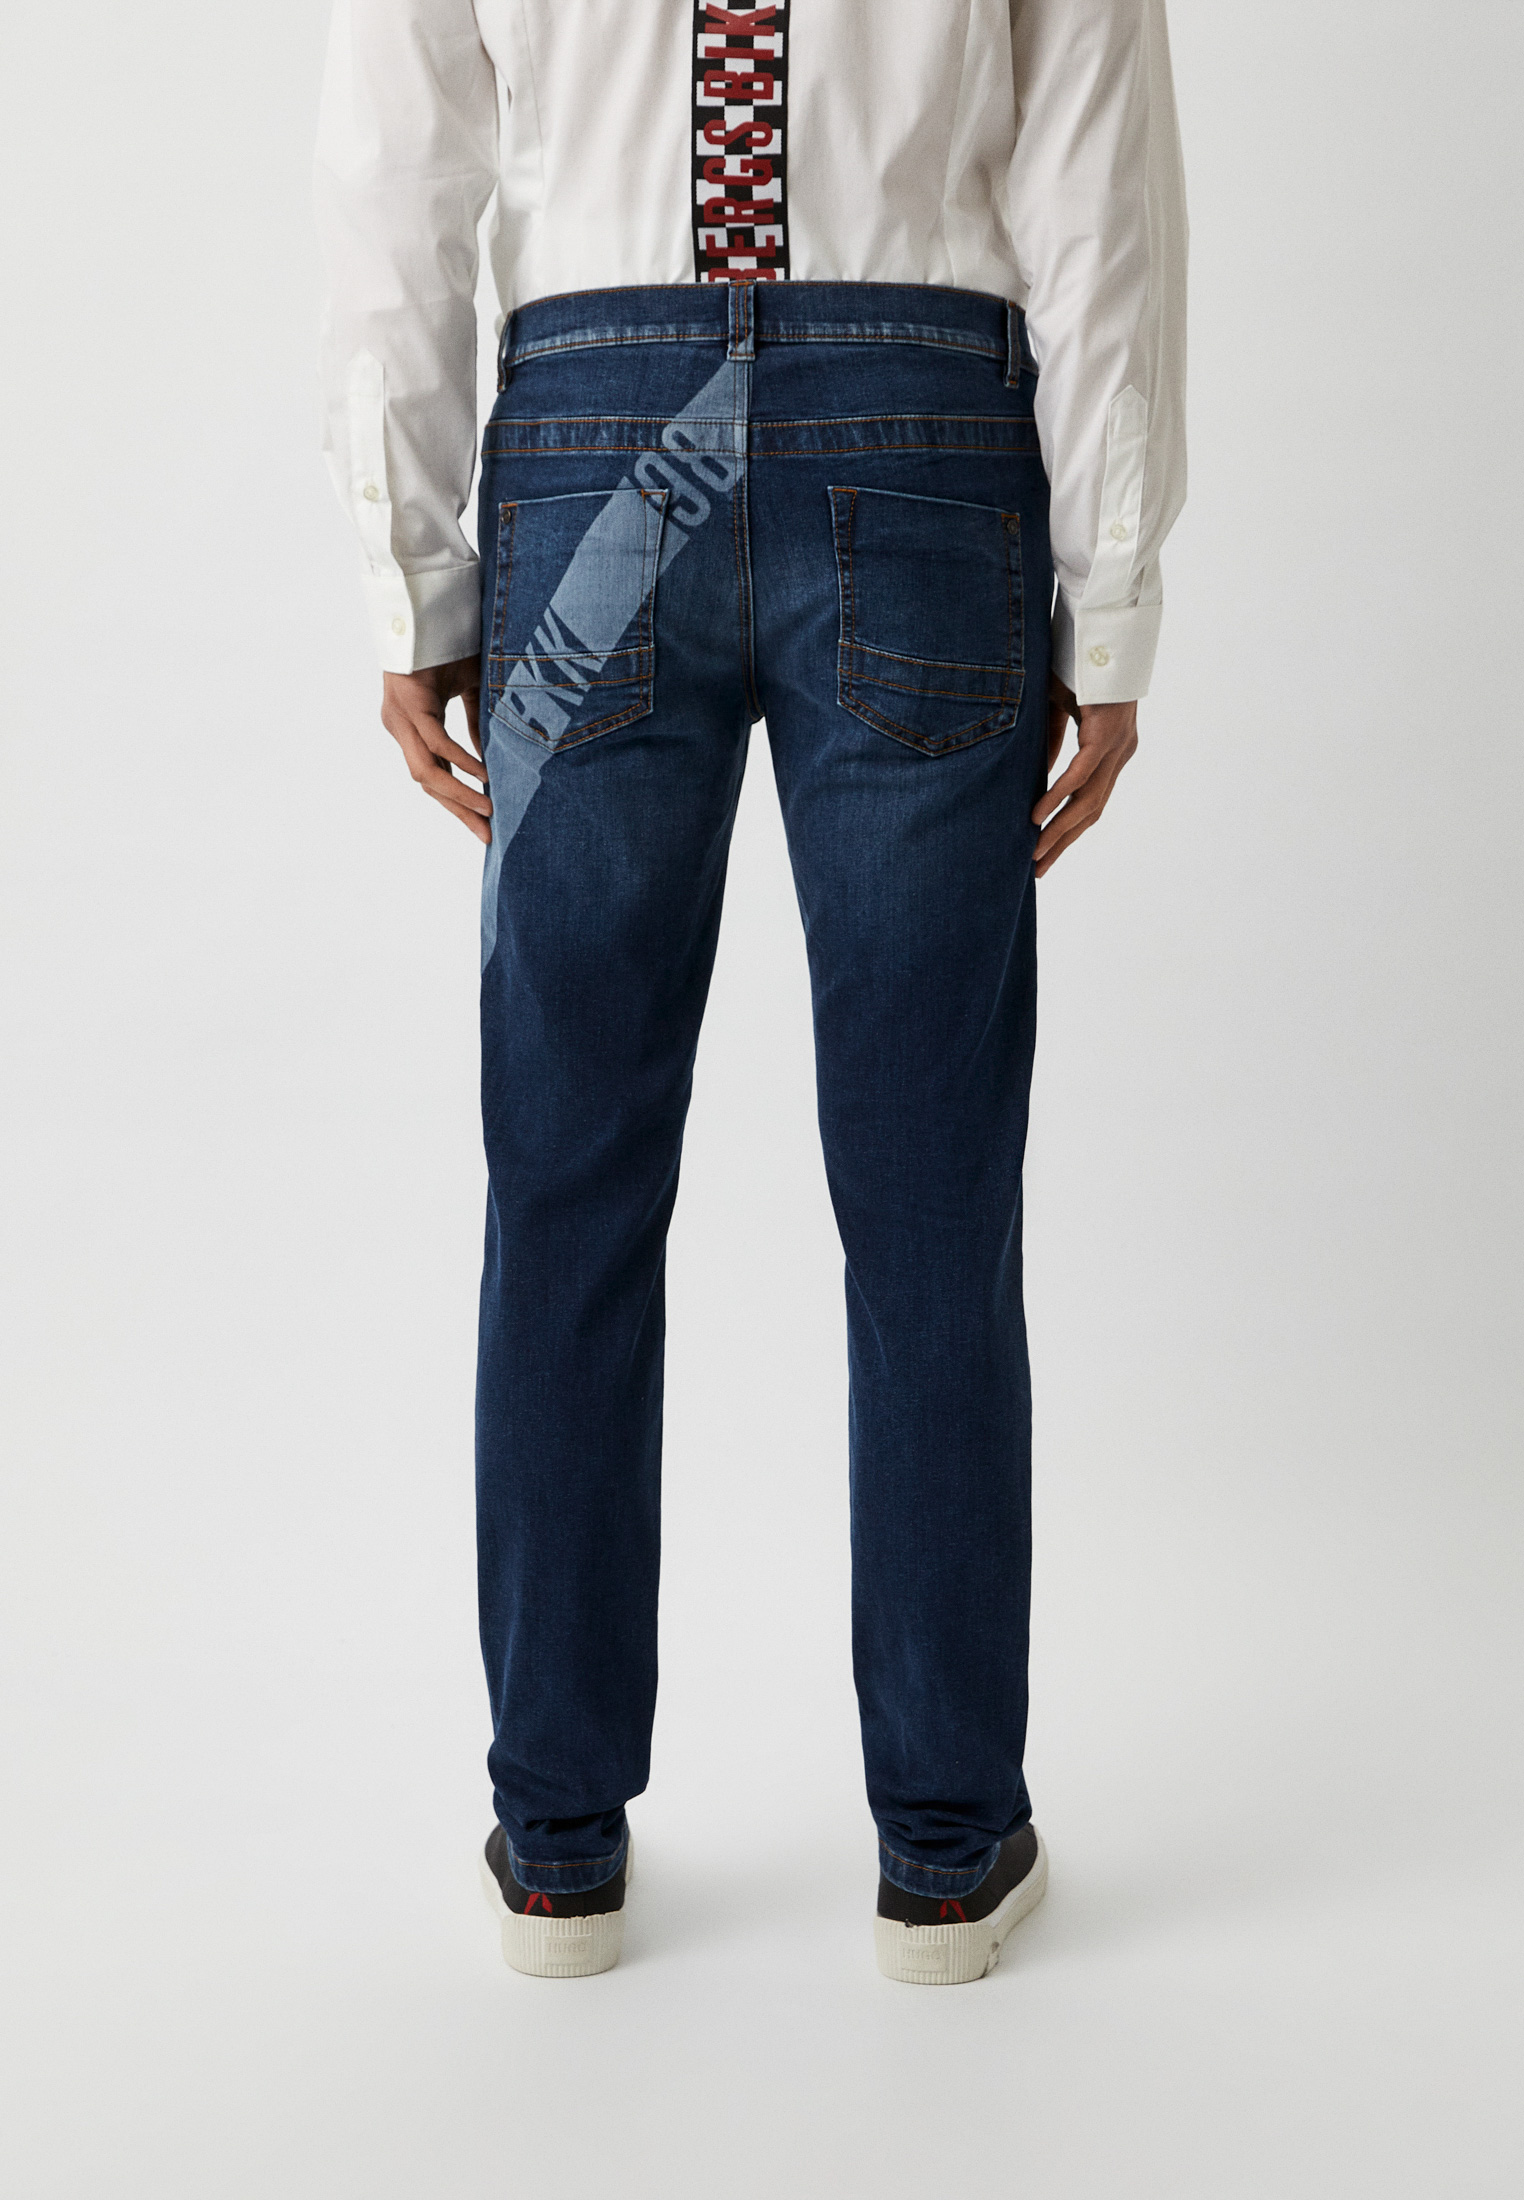 Мужские прямые джинсы Bikkembergs (Биккембергс) C Q 101 1B S 3511: изображение 7